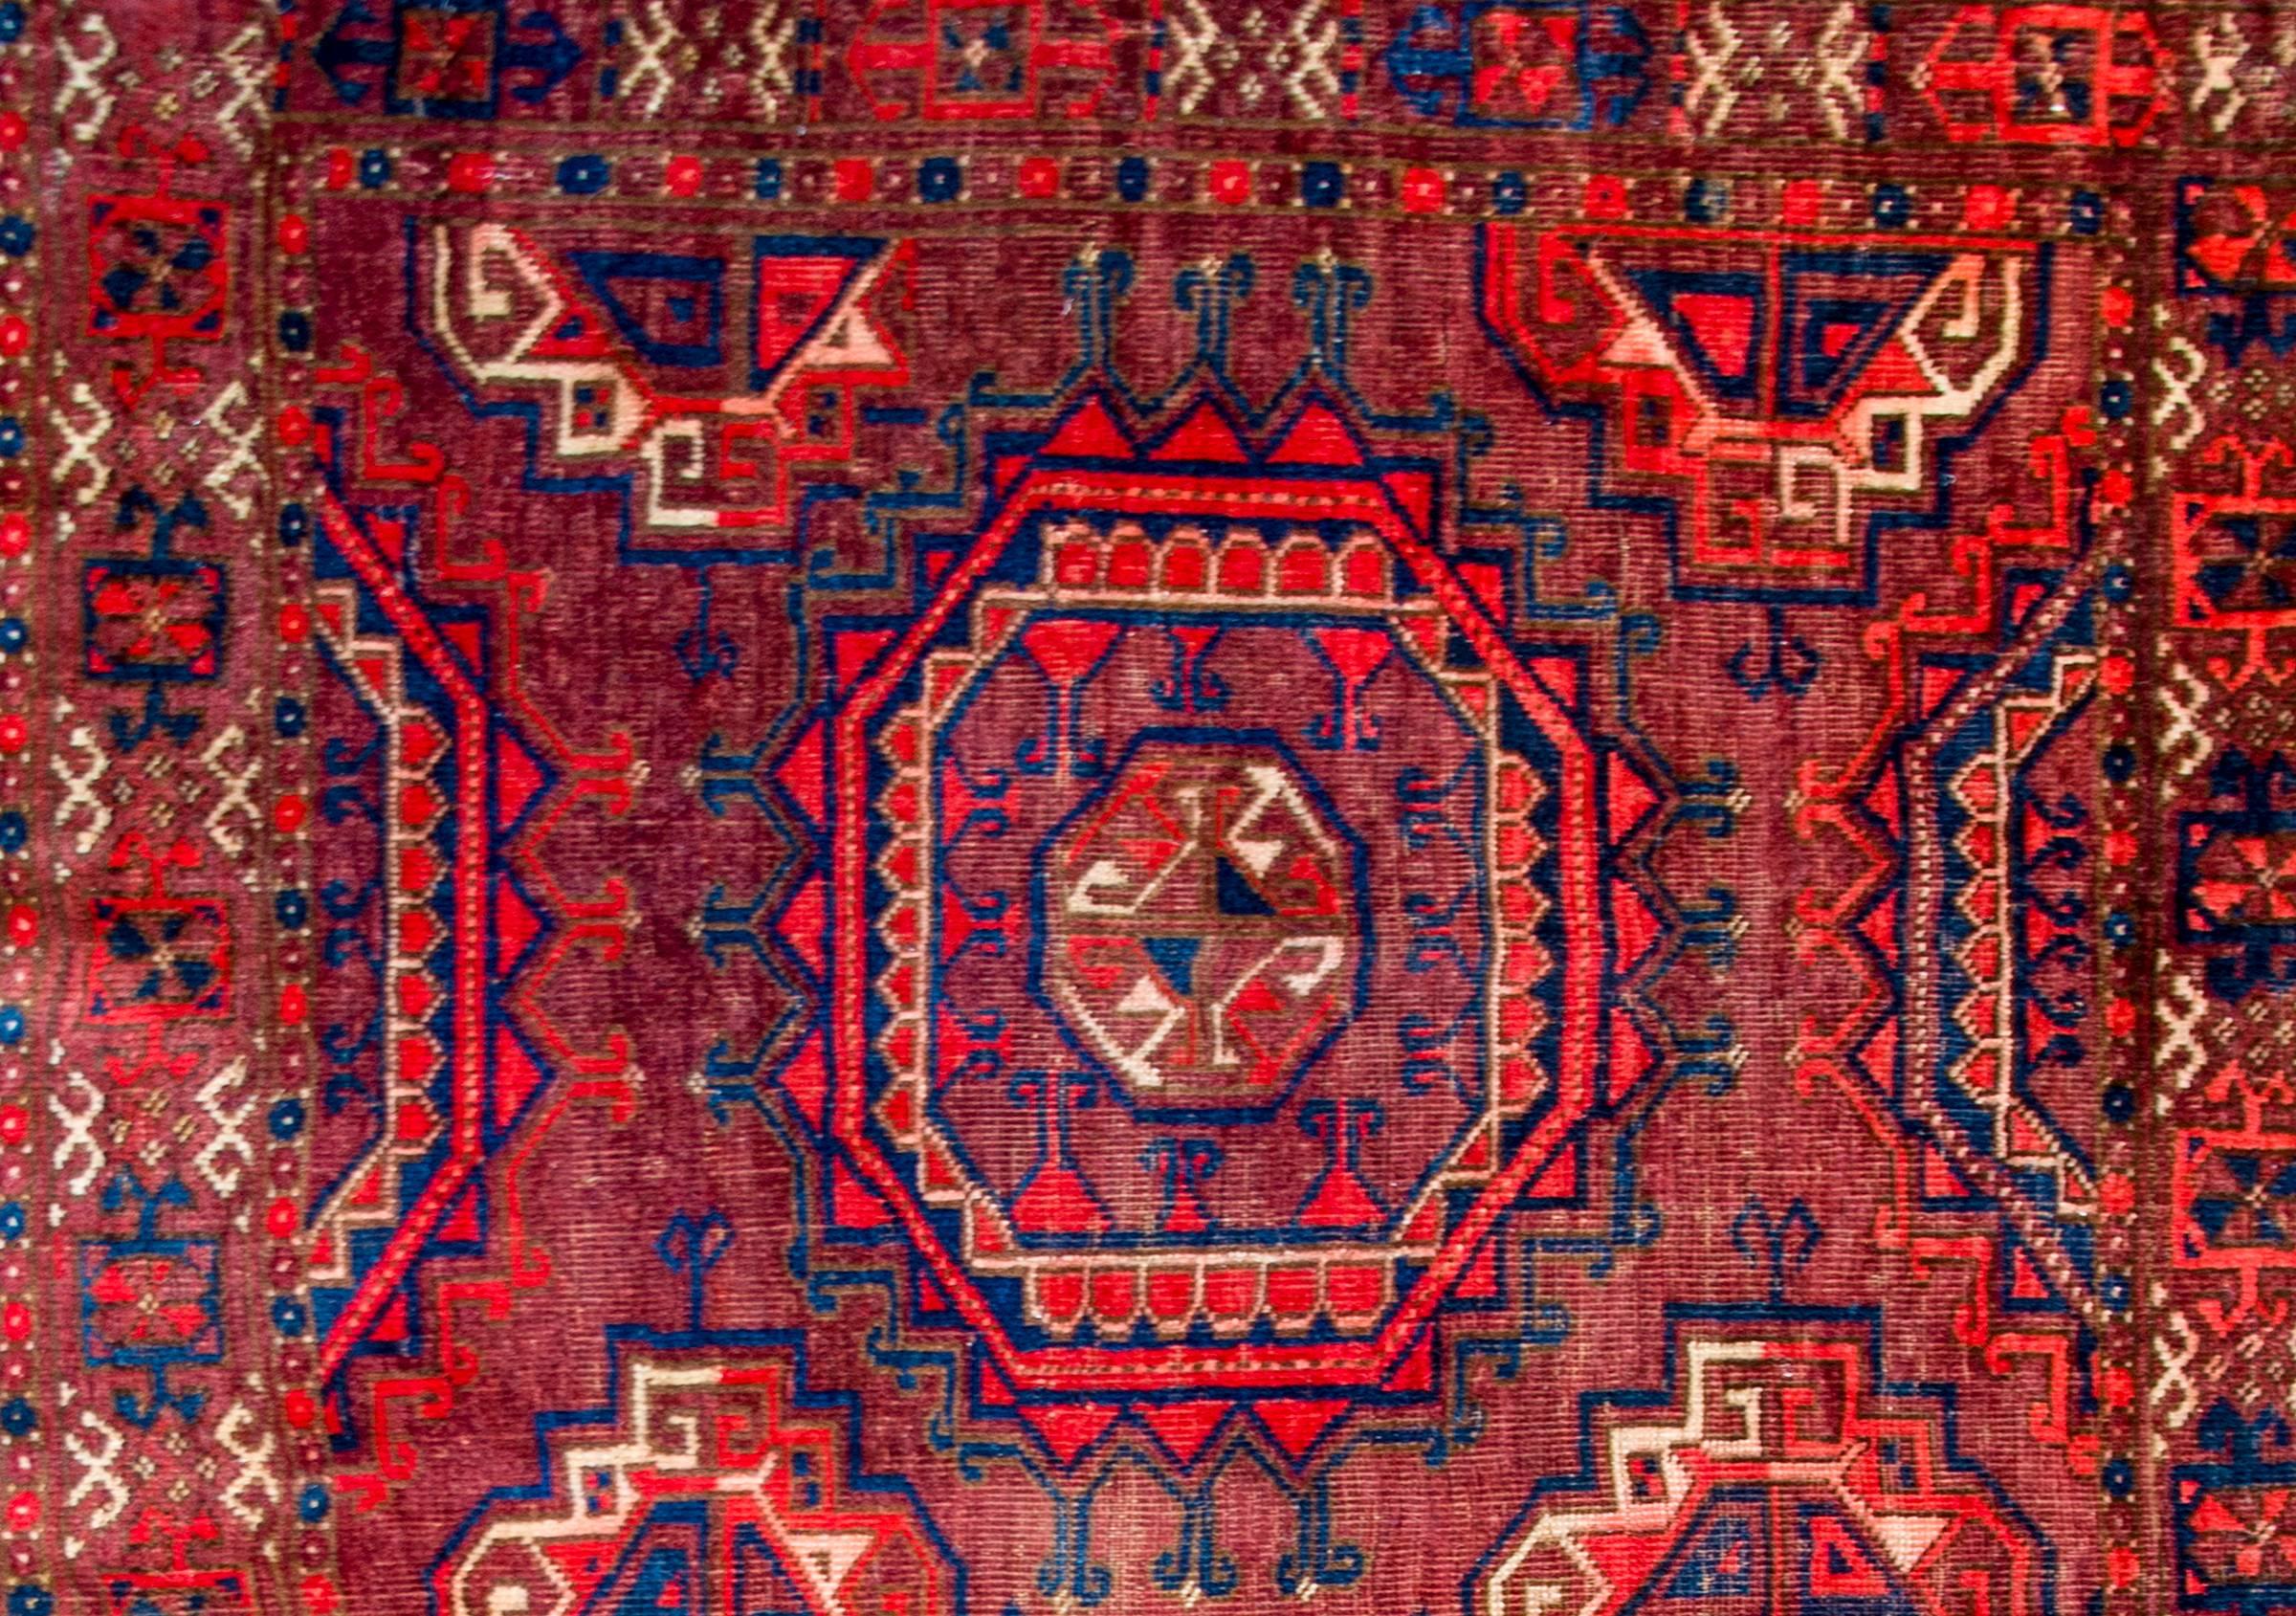 Turkmenische Juval-Tasche aus dem frühen 20. Jahrhundert mit einem schönen Muster aus zwei großen achteckigen Medaillons inmitten eines Feldes kleinerer achteckiger Medaillons, die alle in Crimon, Weiß sowie hellem und dunklem Indigo auf karminrotem